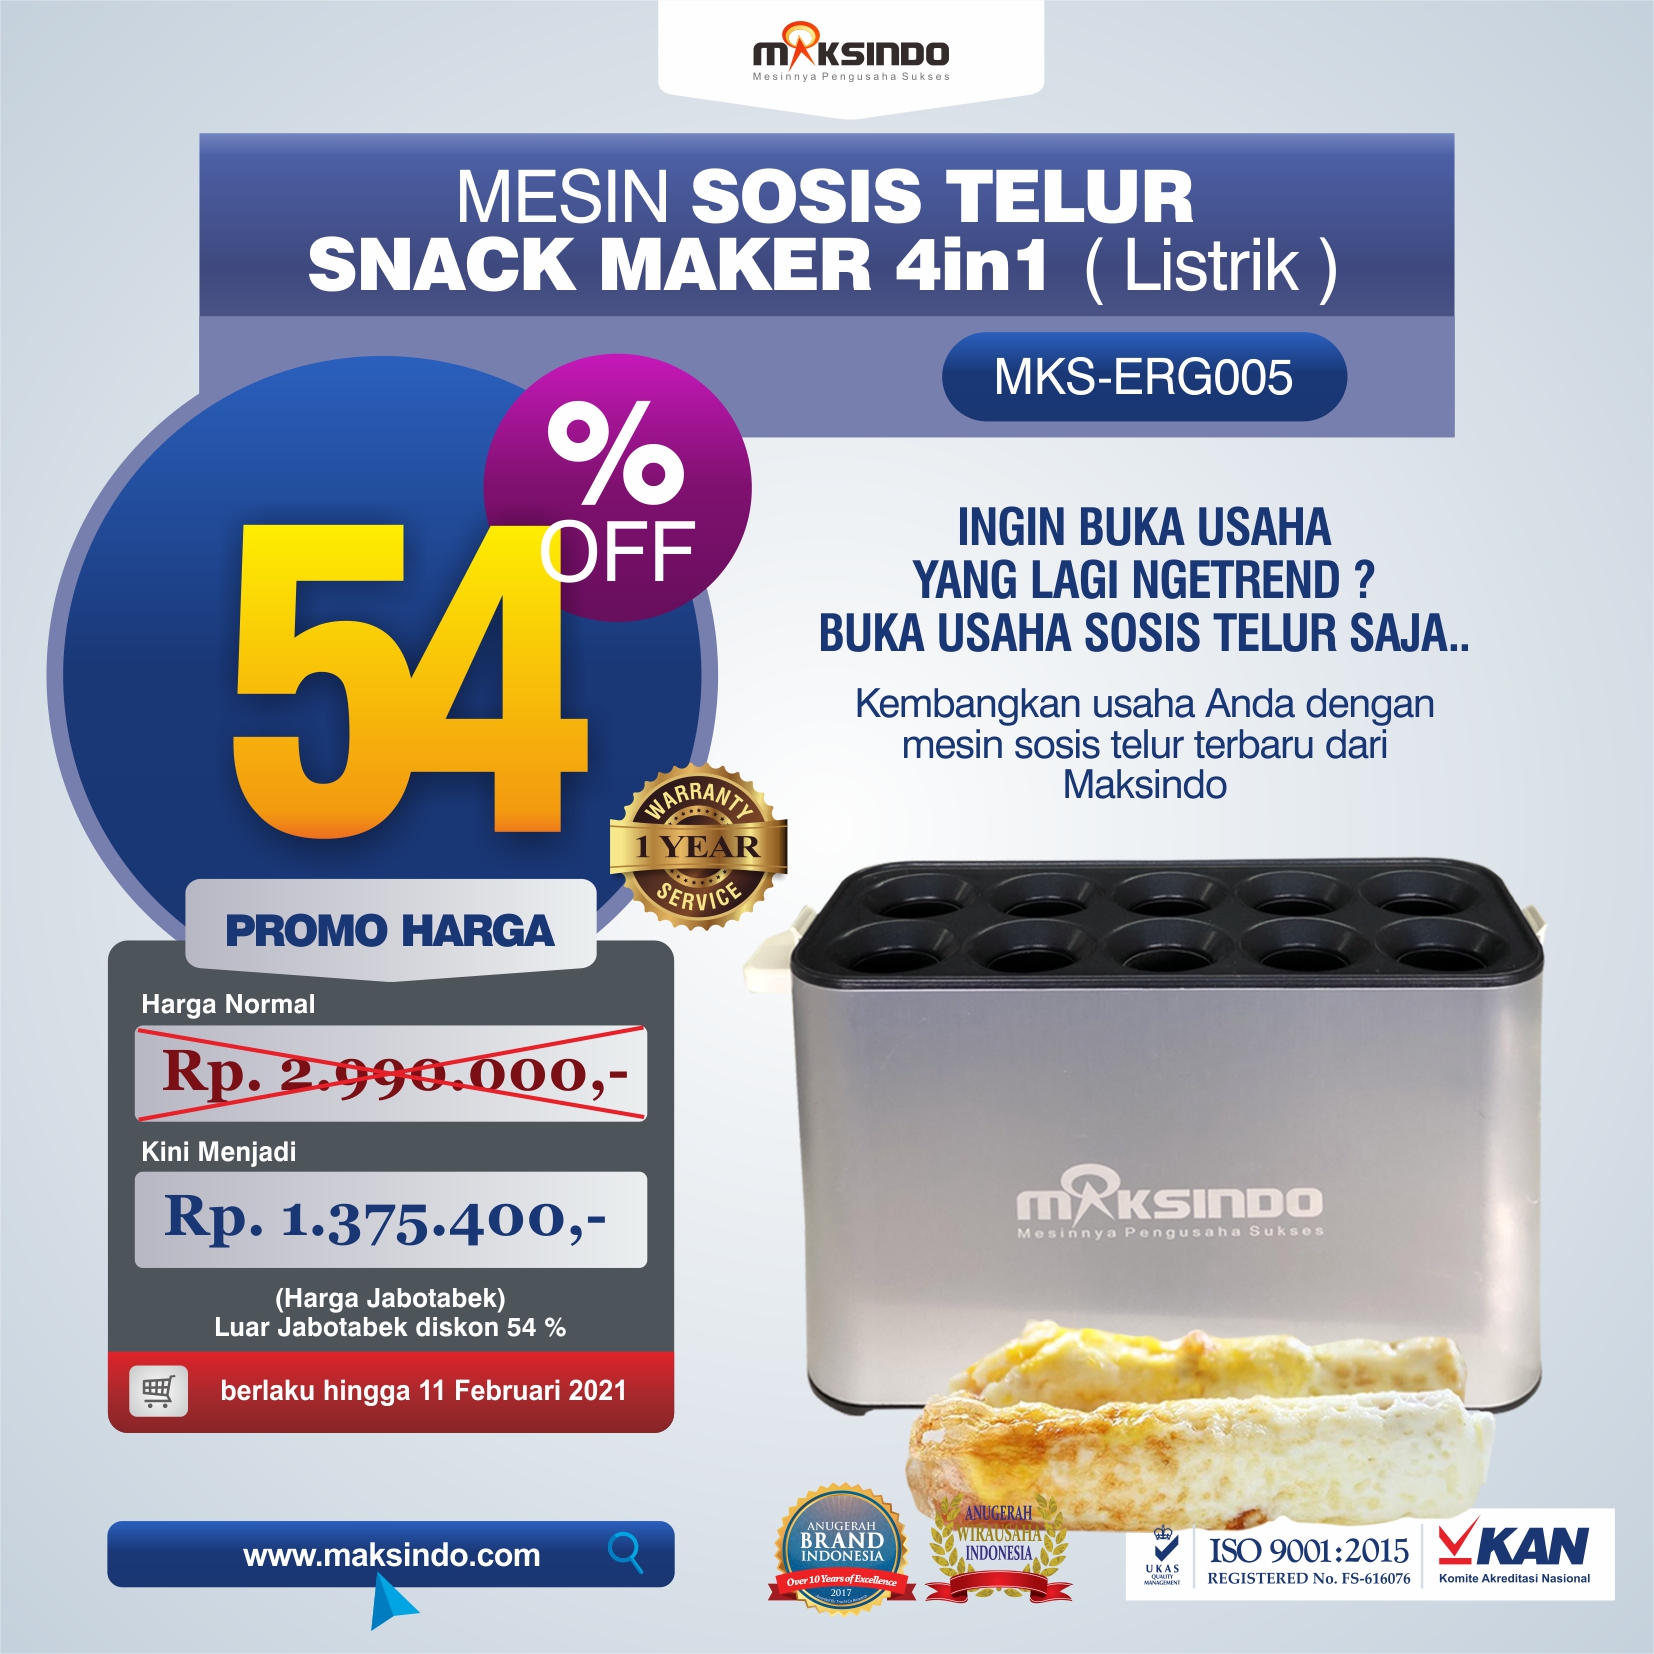 Jual Mesin Egg Roll Sosis Telur Snack Maker 4in1 Listrik MKS-ERG005 di Yogyakarta